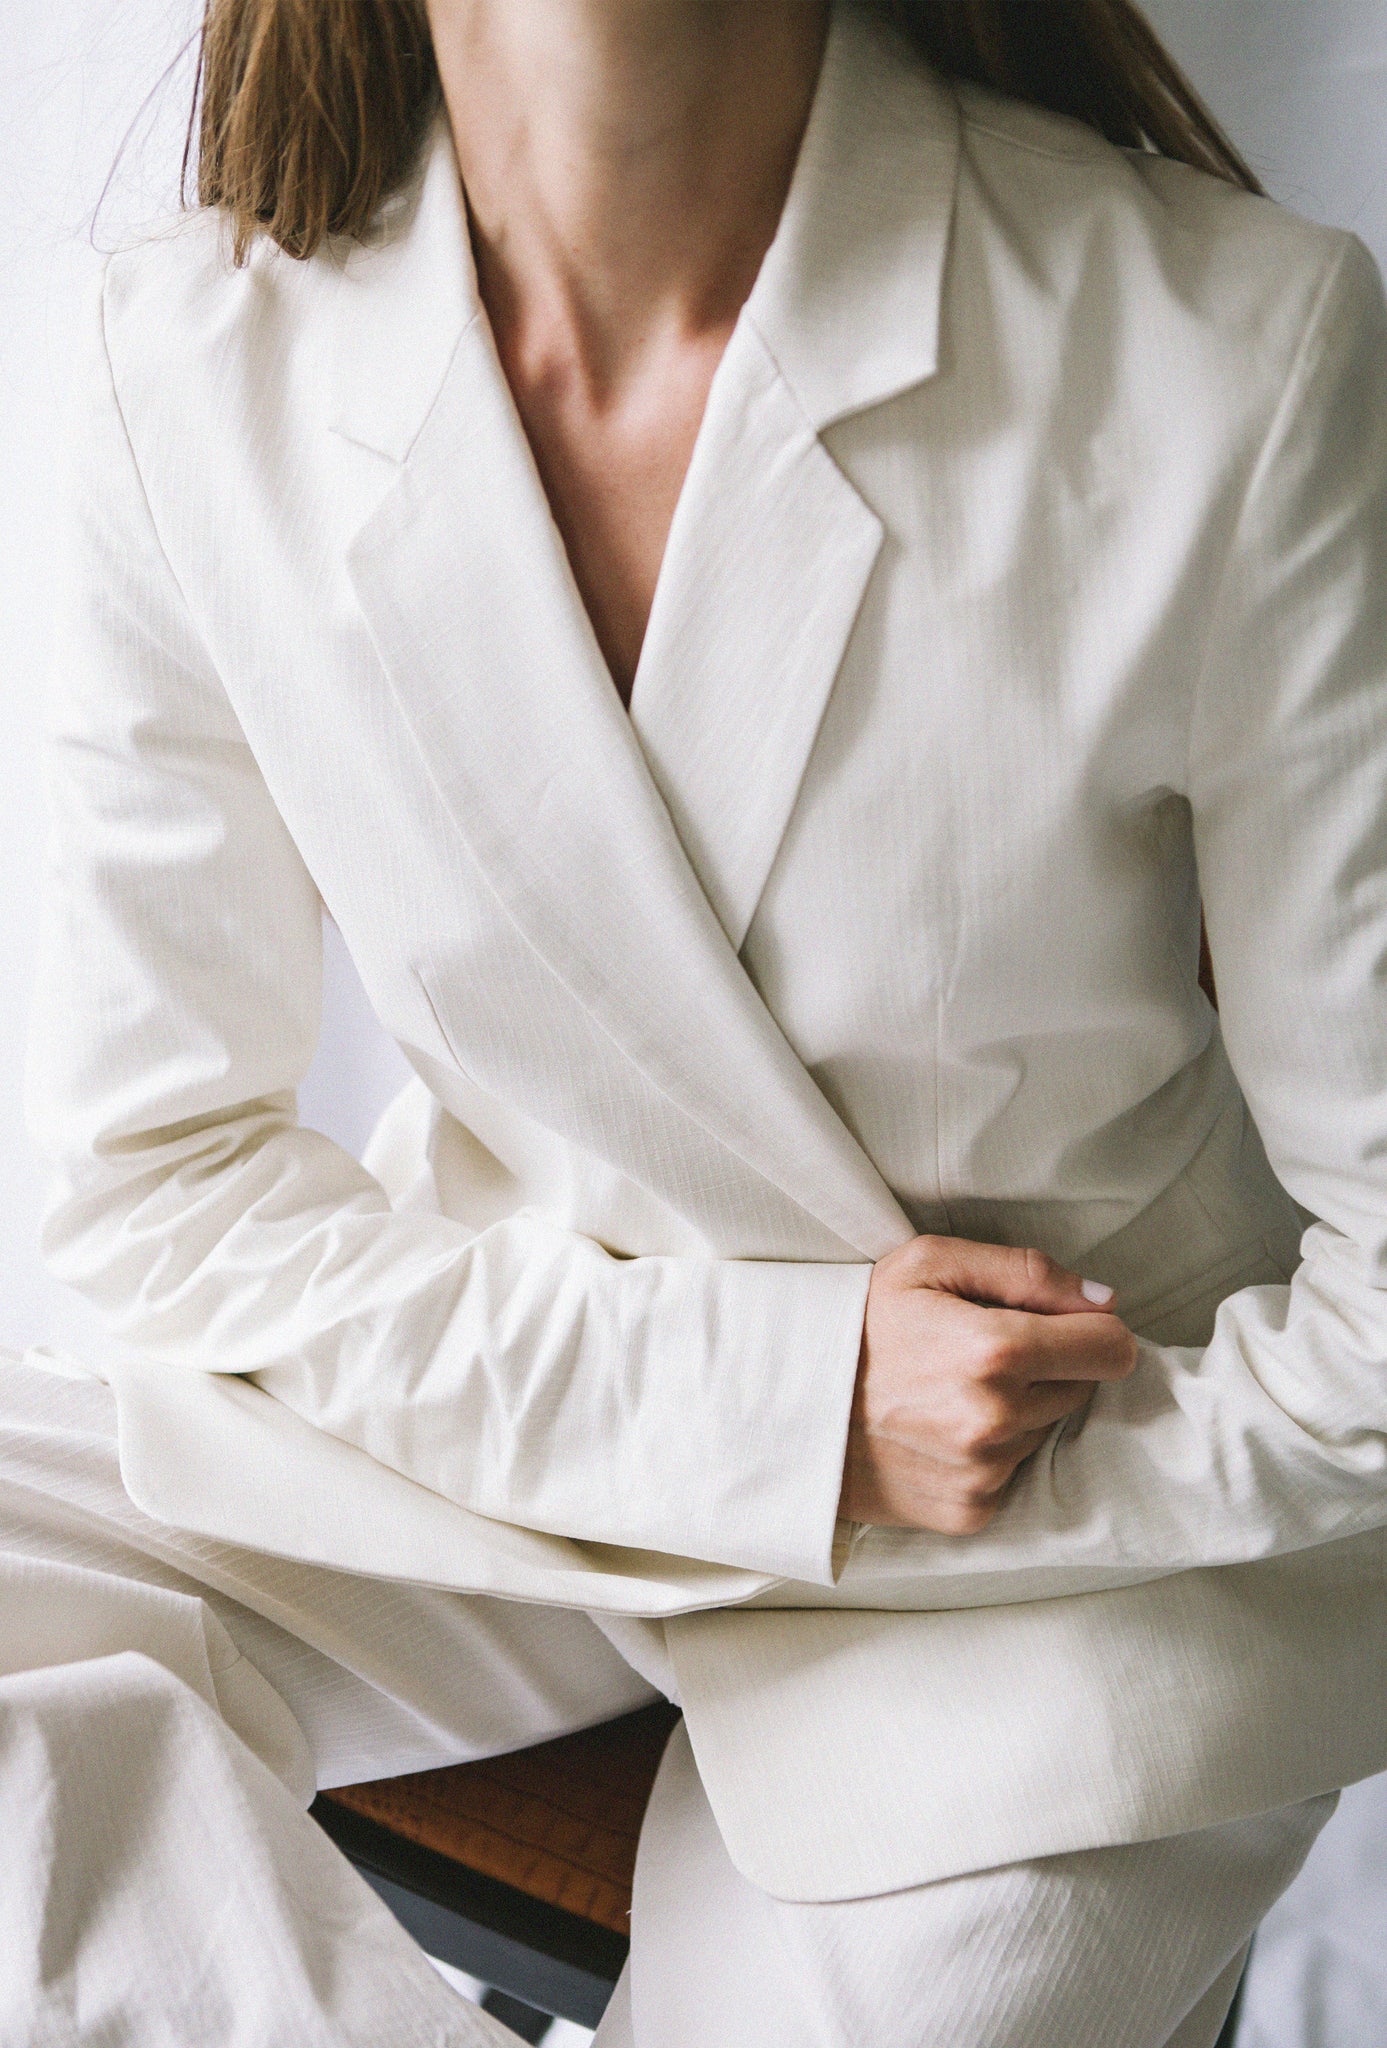 Veste blazer blanche écoresponsable. 3 Boutons vintages de seconde main sur le bout des manches et 1 pour fermer la veste.